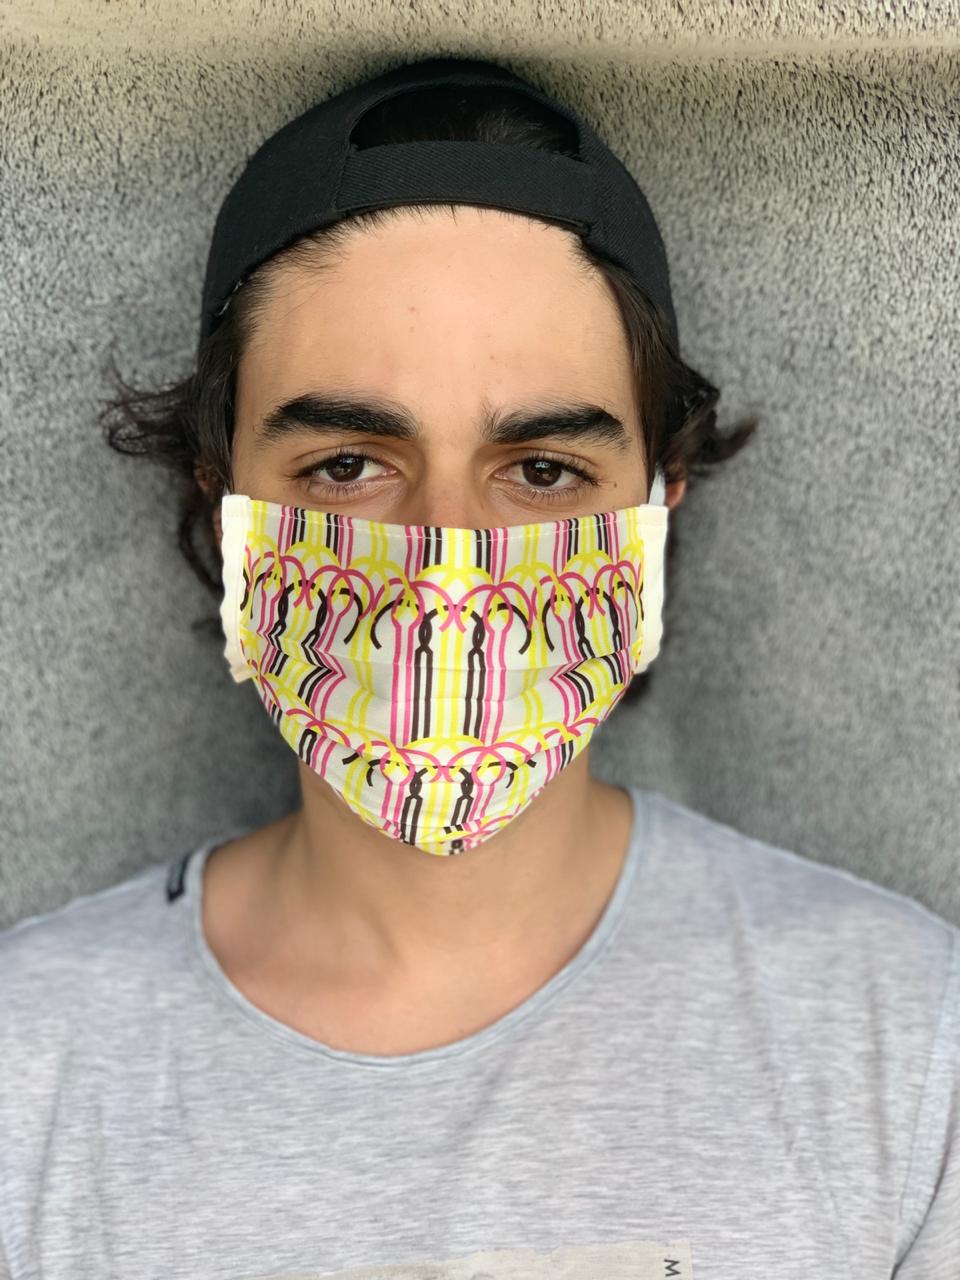 Un masque conçu par l'artiste Zoulikha Bouabdellah et vendu au bénéfice d'une association d'aide aux personnes vulnérables.